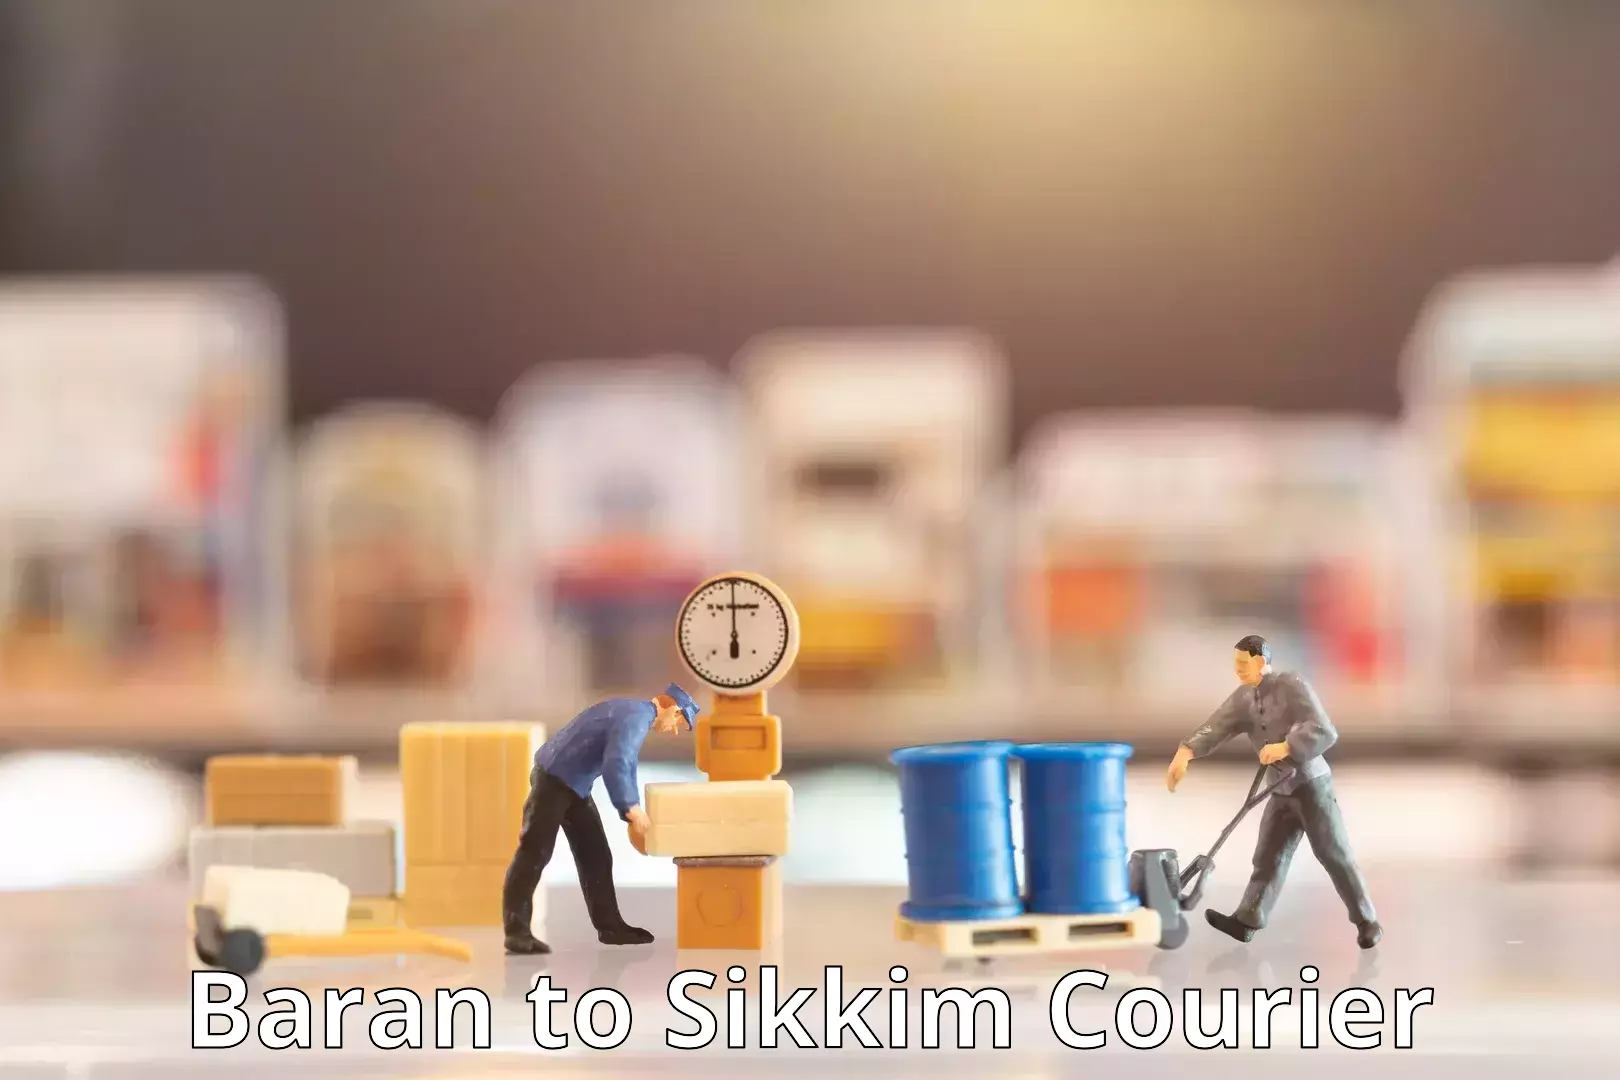 Bulk shipment Baran to Sikkim